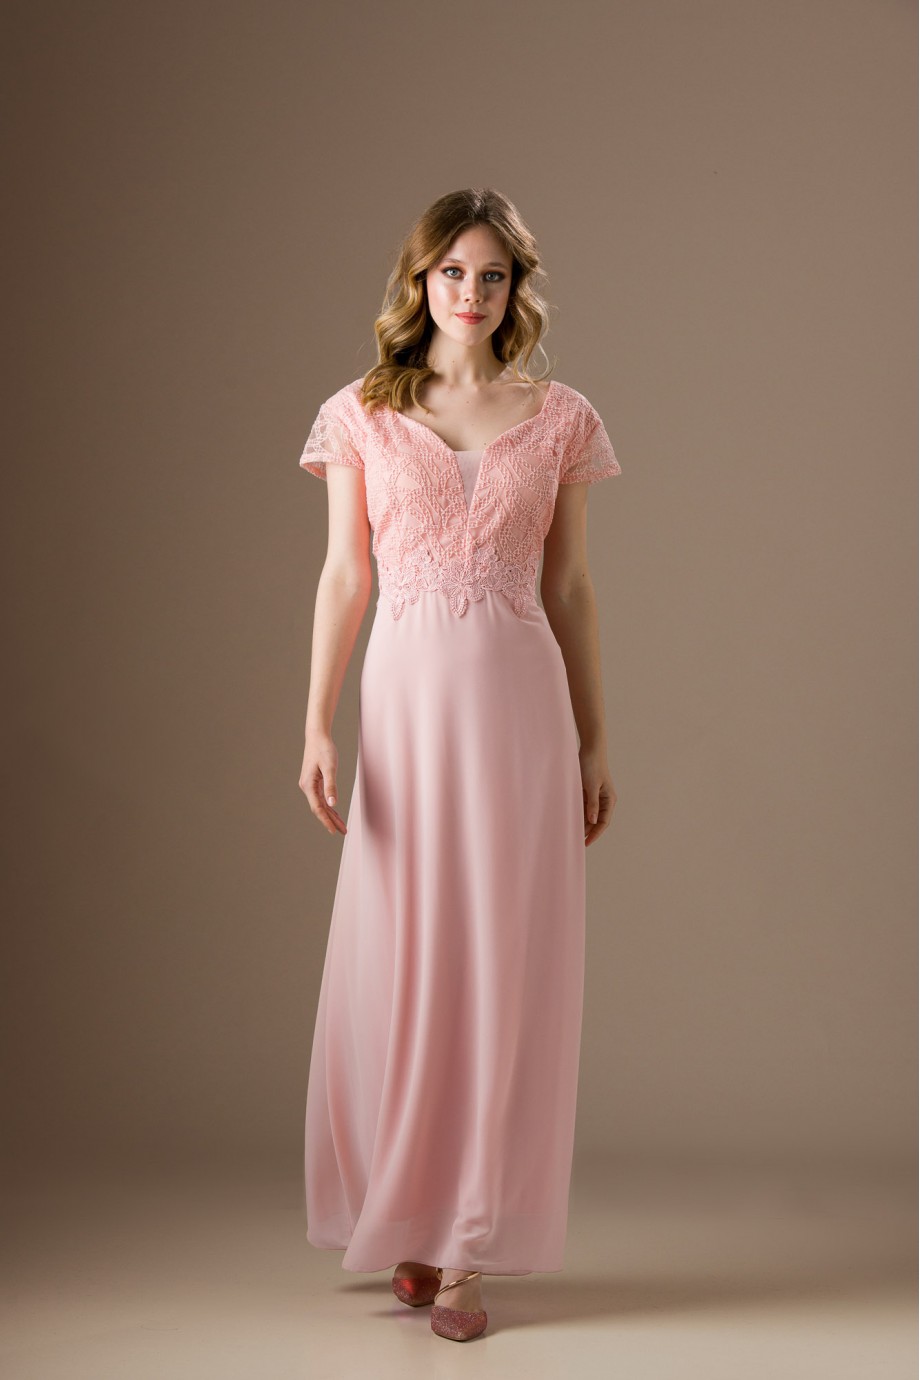 Μακρύ ροζ φόρεμα με δαντέλα στο μπούστο